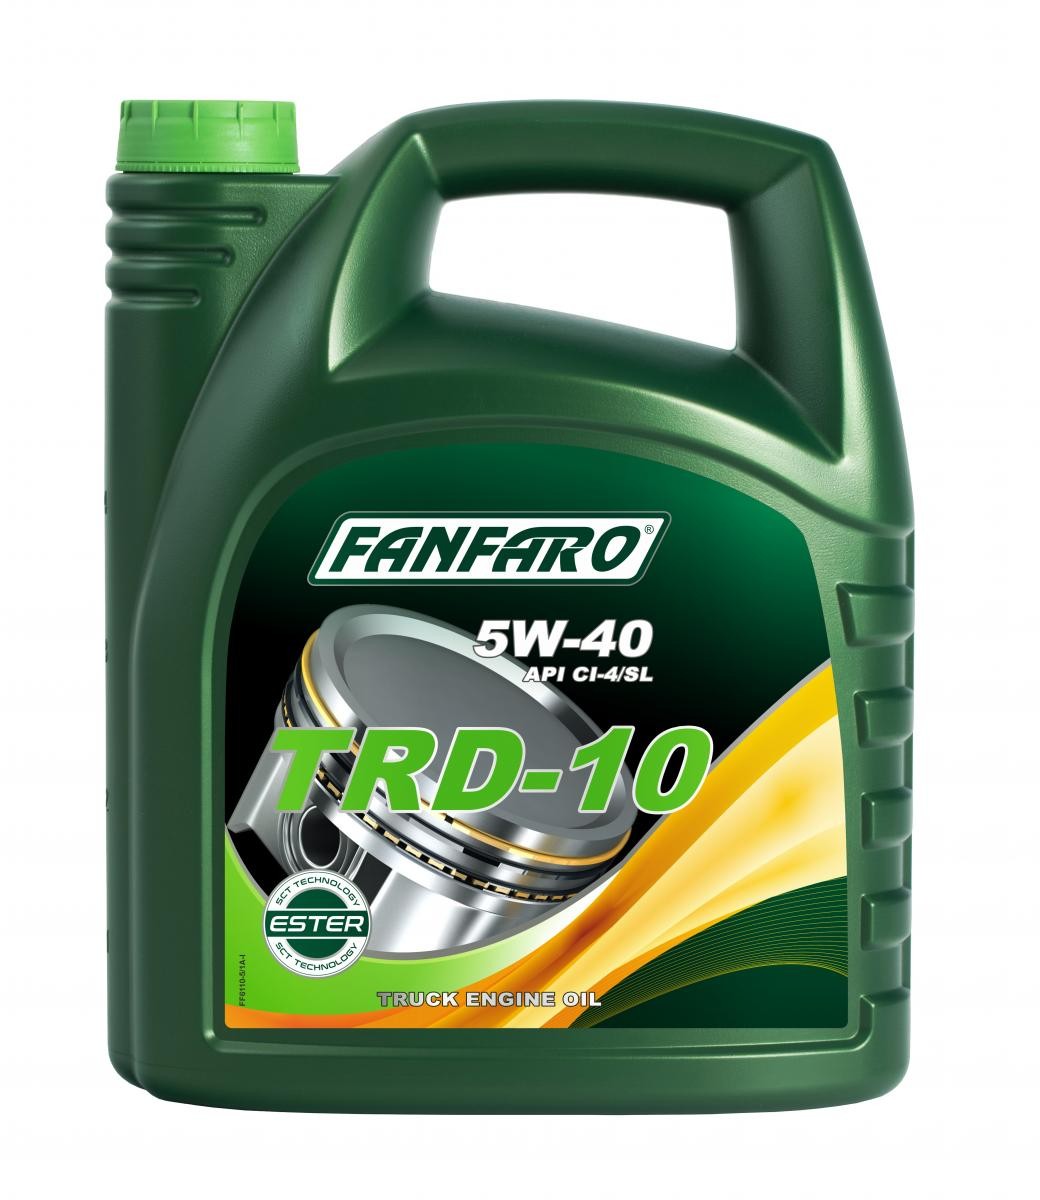 Car oil FANFARO 5W-40, 5l, Synthetic Oil longlife FF6110-5